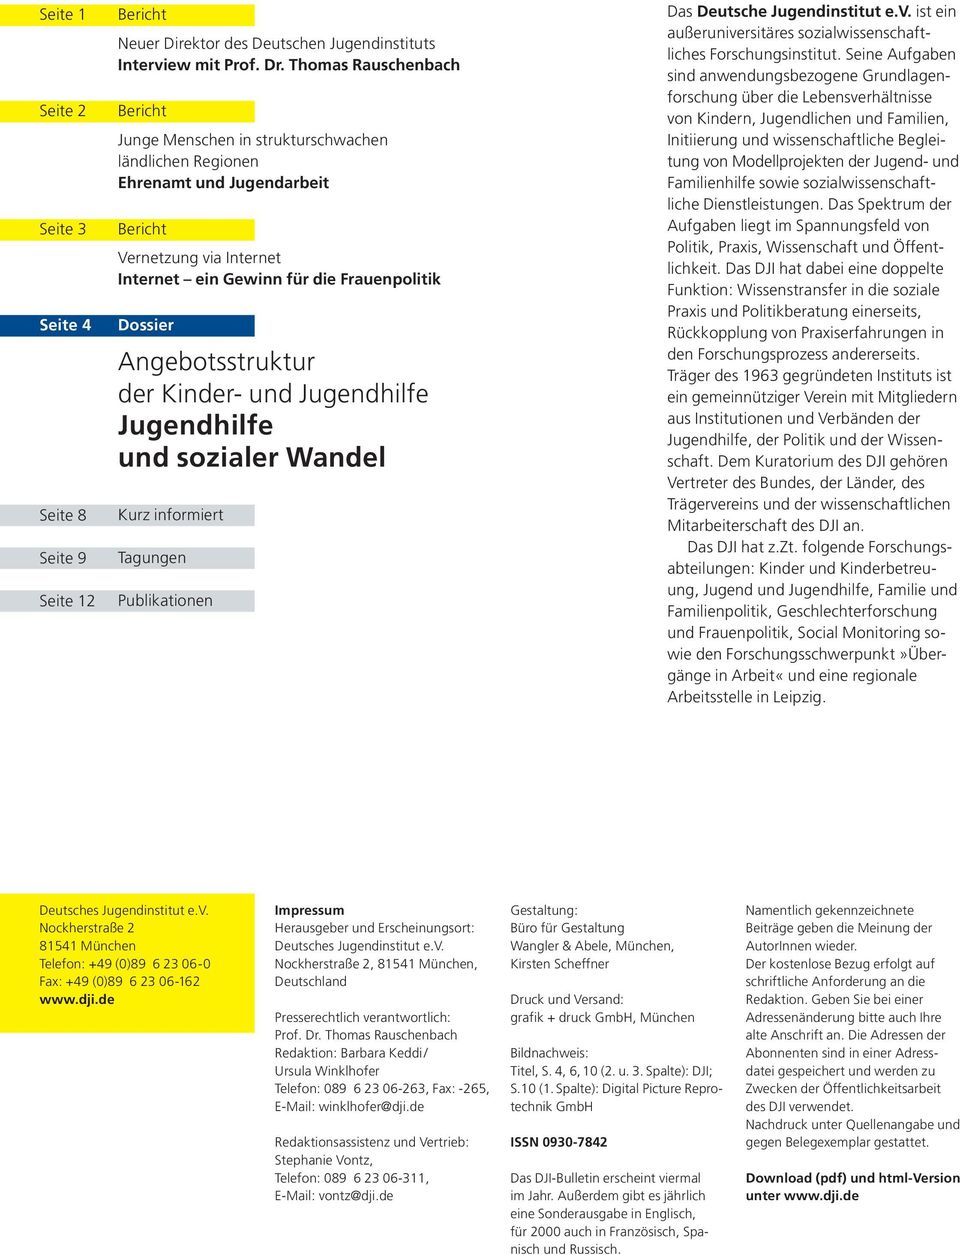 Angebotsstruktur der Kinder- und Jugendhilfe Jugendhilfe und sozialer Wandel Kurz informiert Tagungen Publikationen Das Deutsche Jugendinstitut e.v.